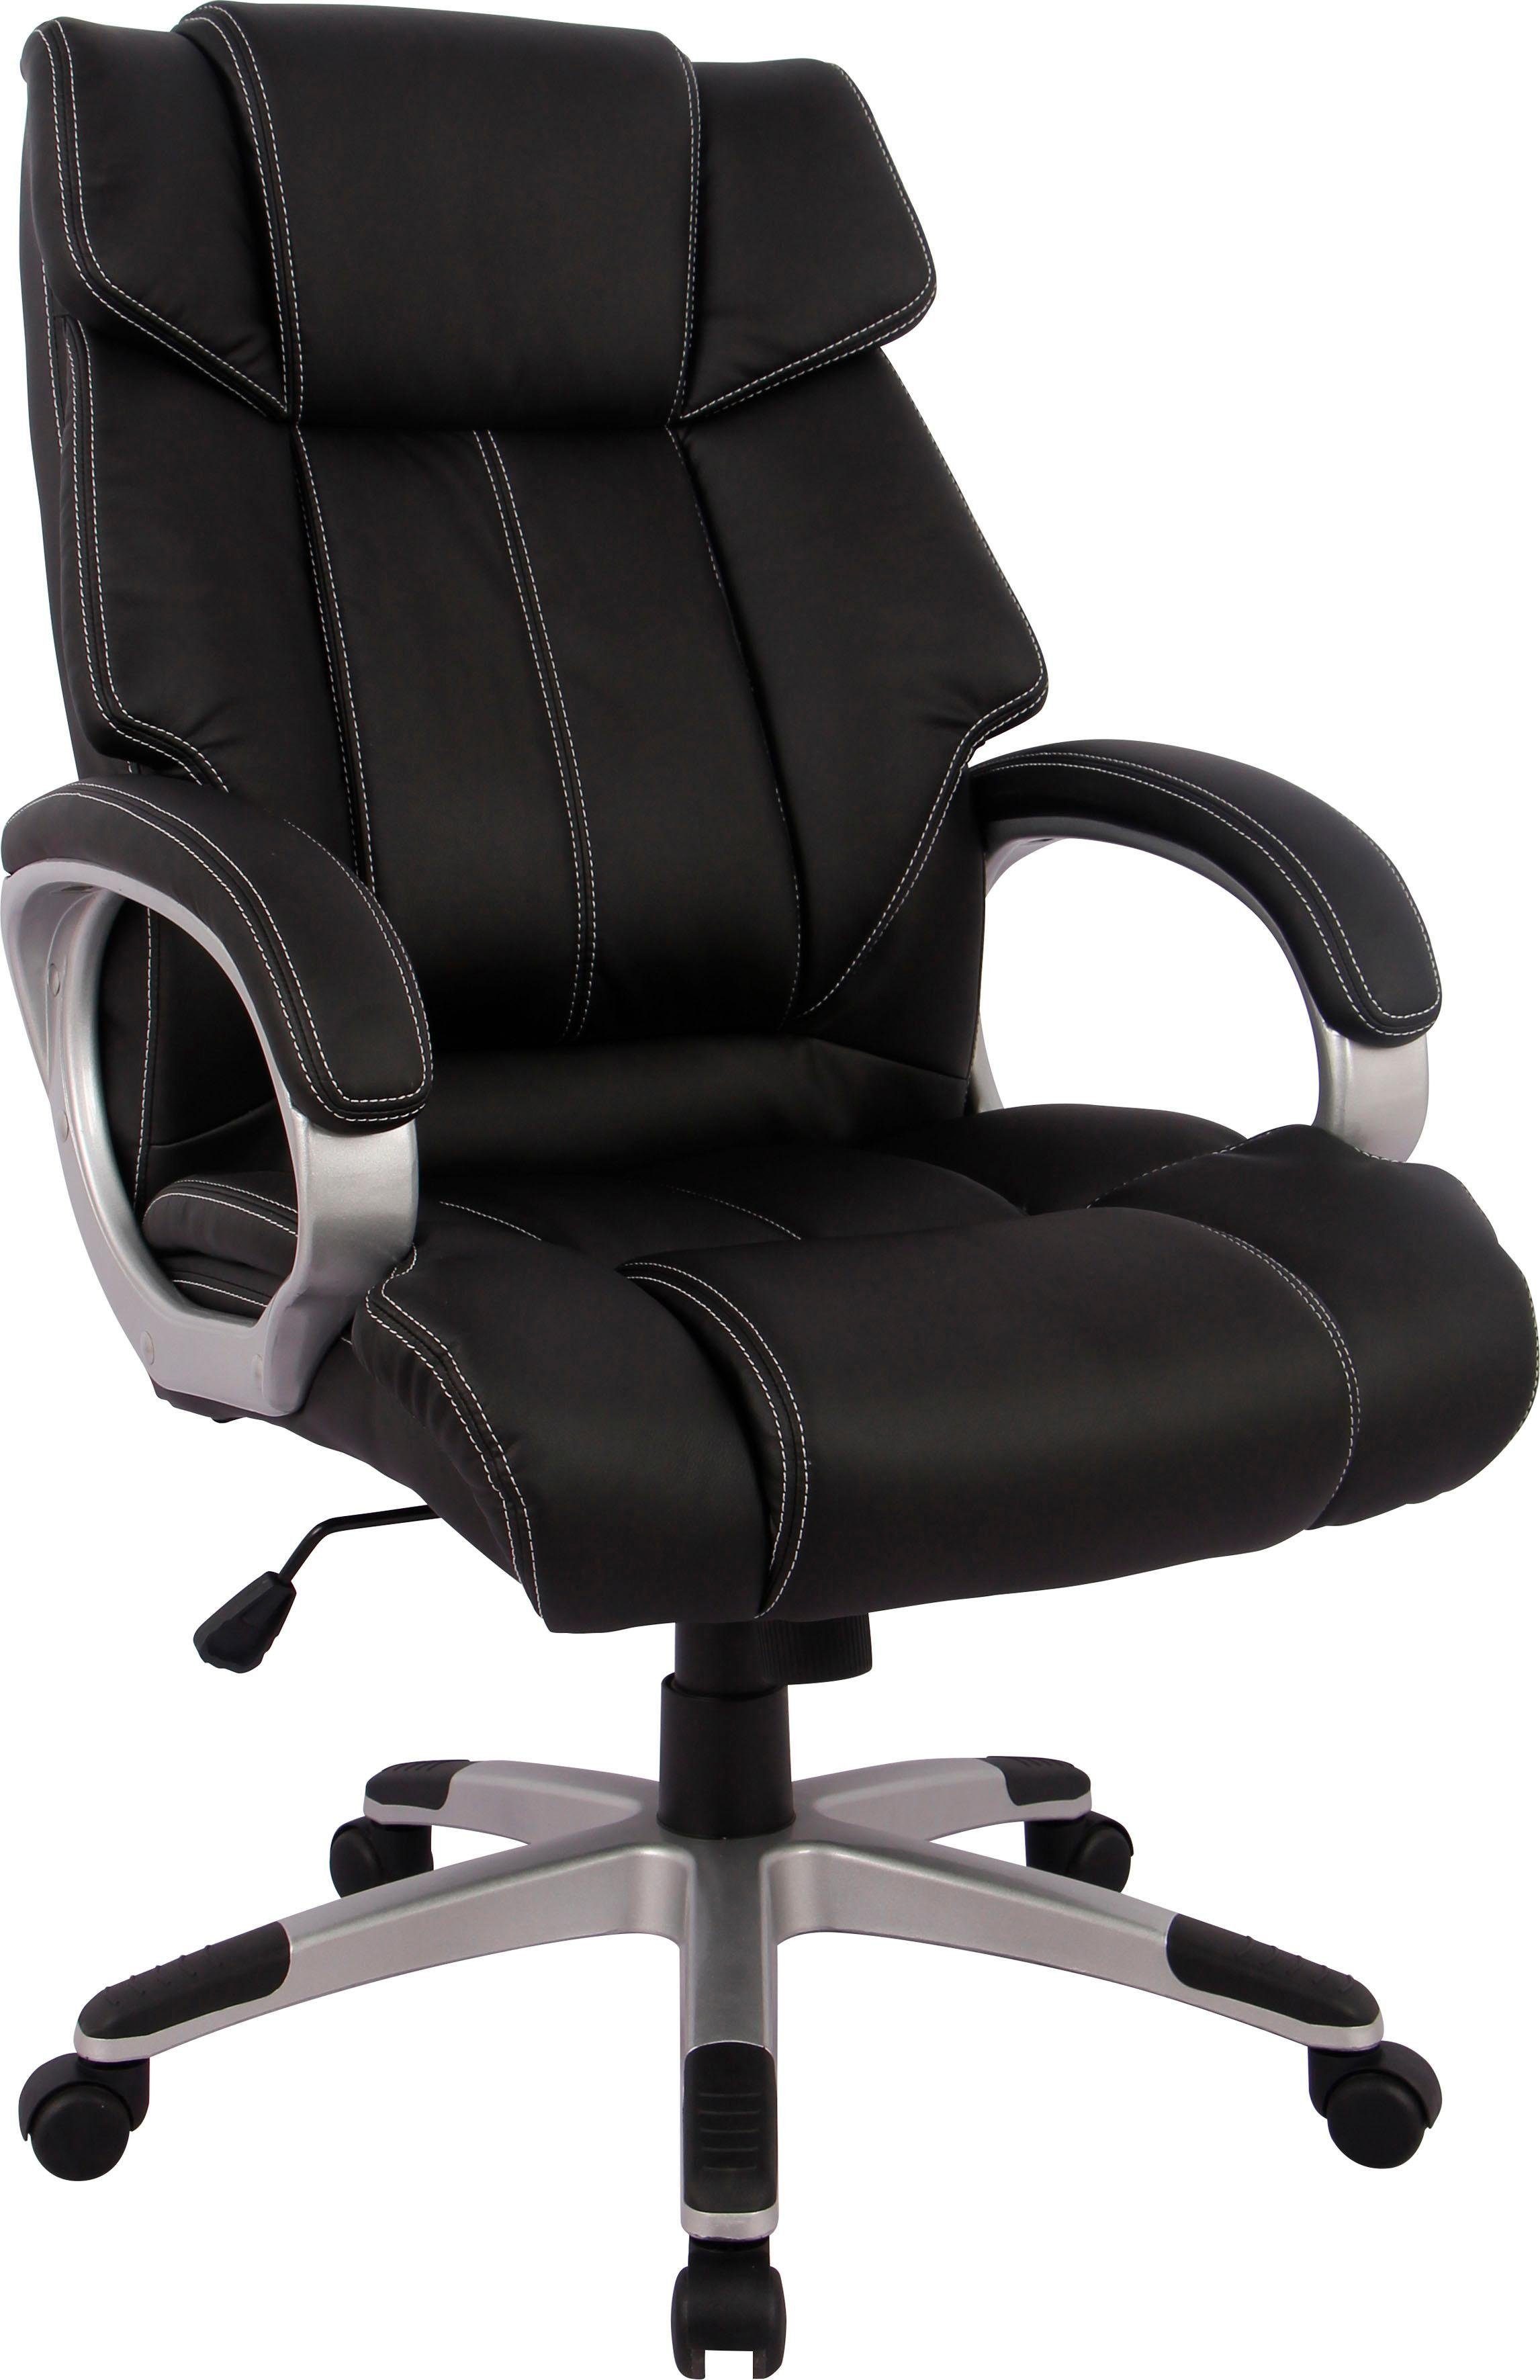 INOSIGN Chefsessel bequemer Bürostuhl fürs Homeoffice, verstellbare Sitzhöhe/Sitztiefe, komfortable Polsterung